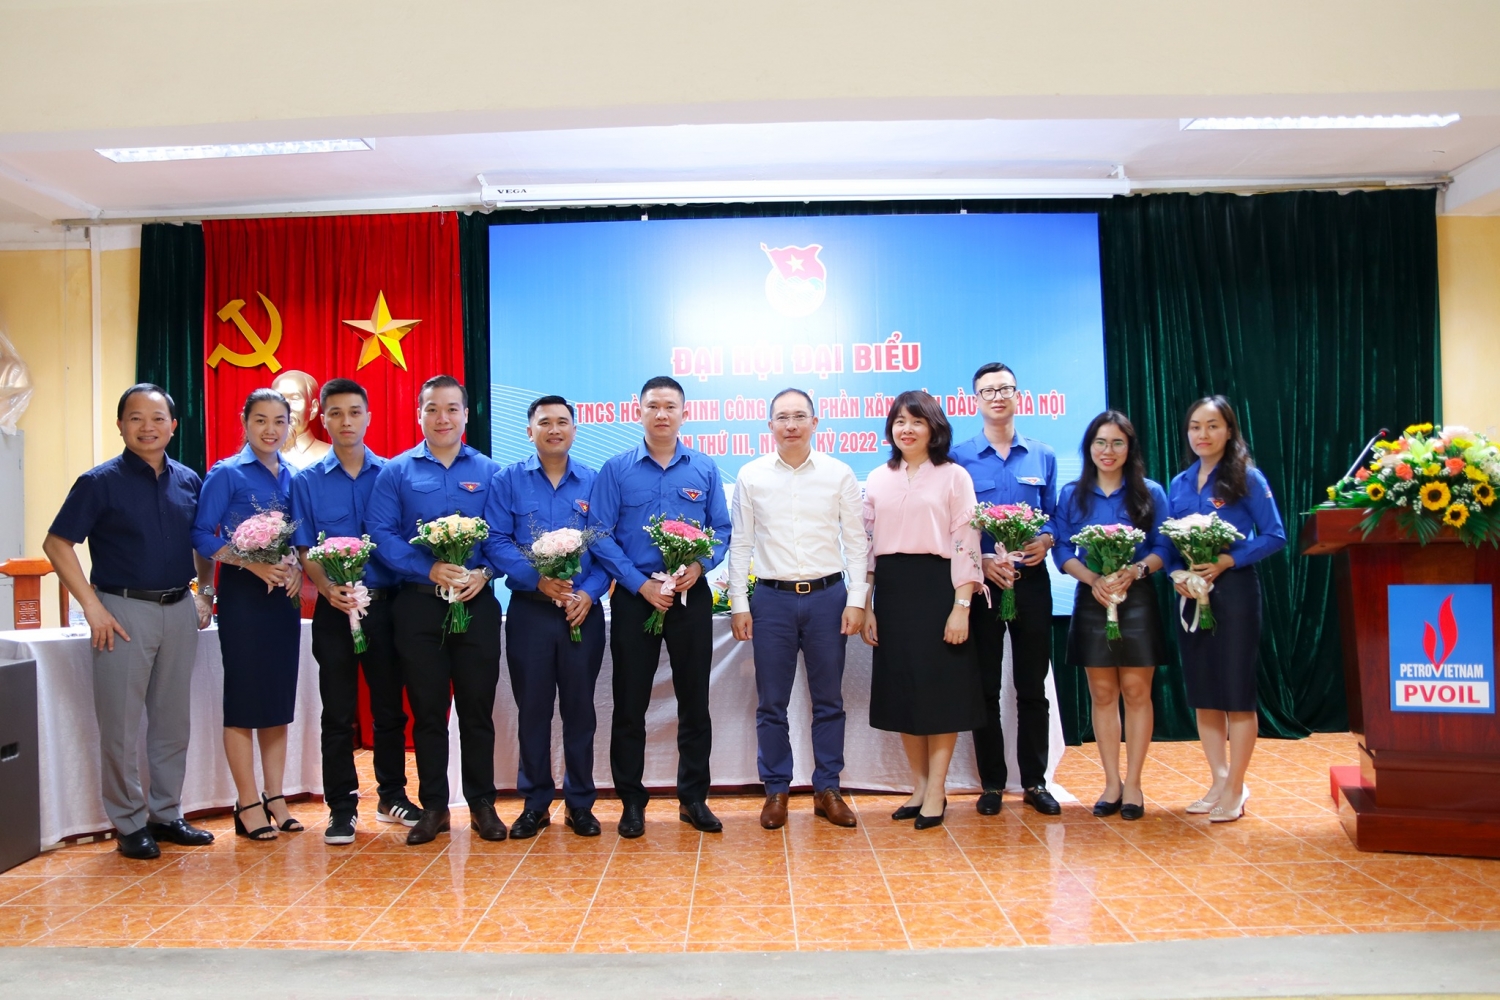 Đảng ủy, Ban lãnh đạo Công ty chúc mừng các Đồng chí BCH Đoàn PVOIL Hà Nội nhiệm kì 2022-2027